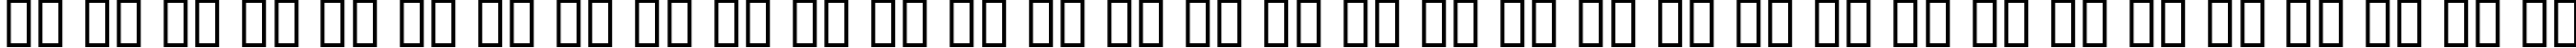 Пример написания русского алфавита шрифтом GoSoul